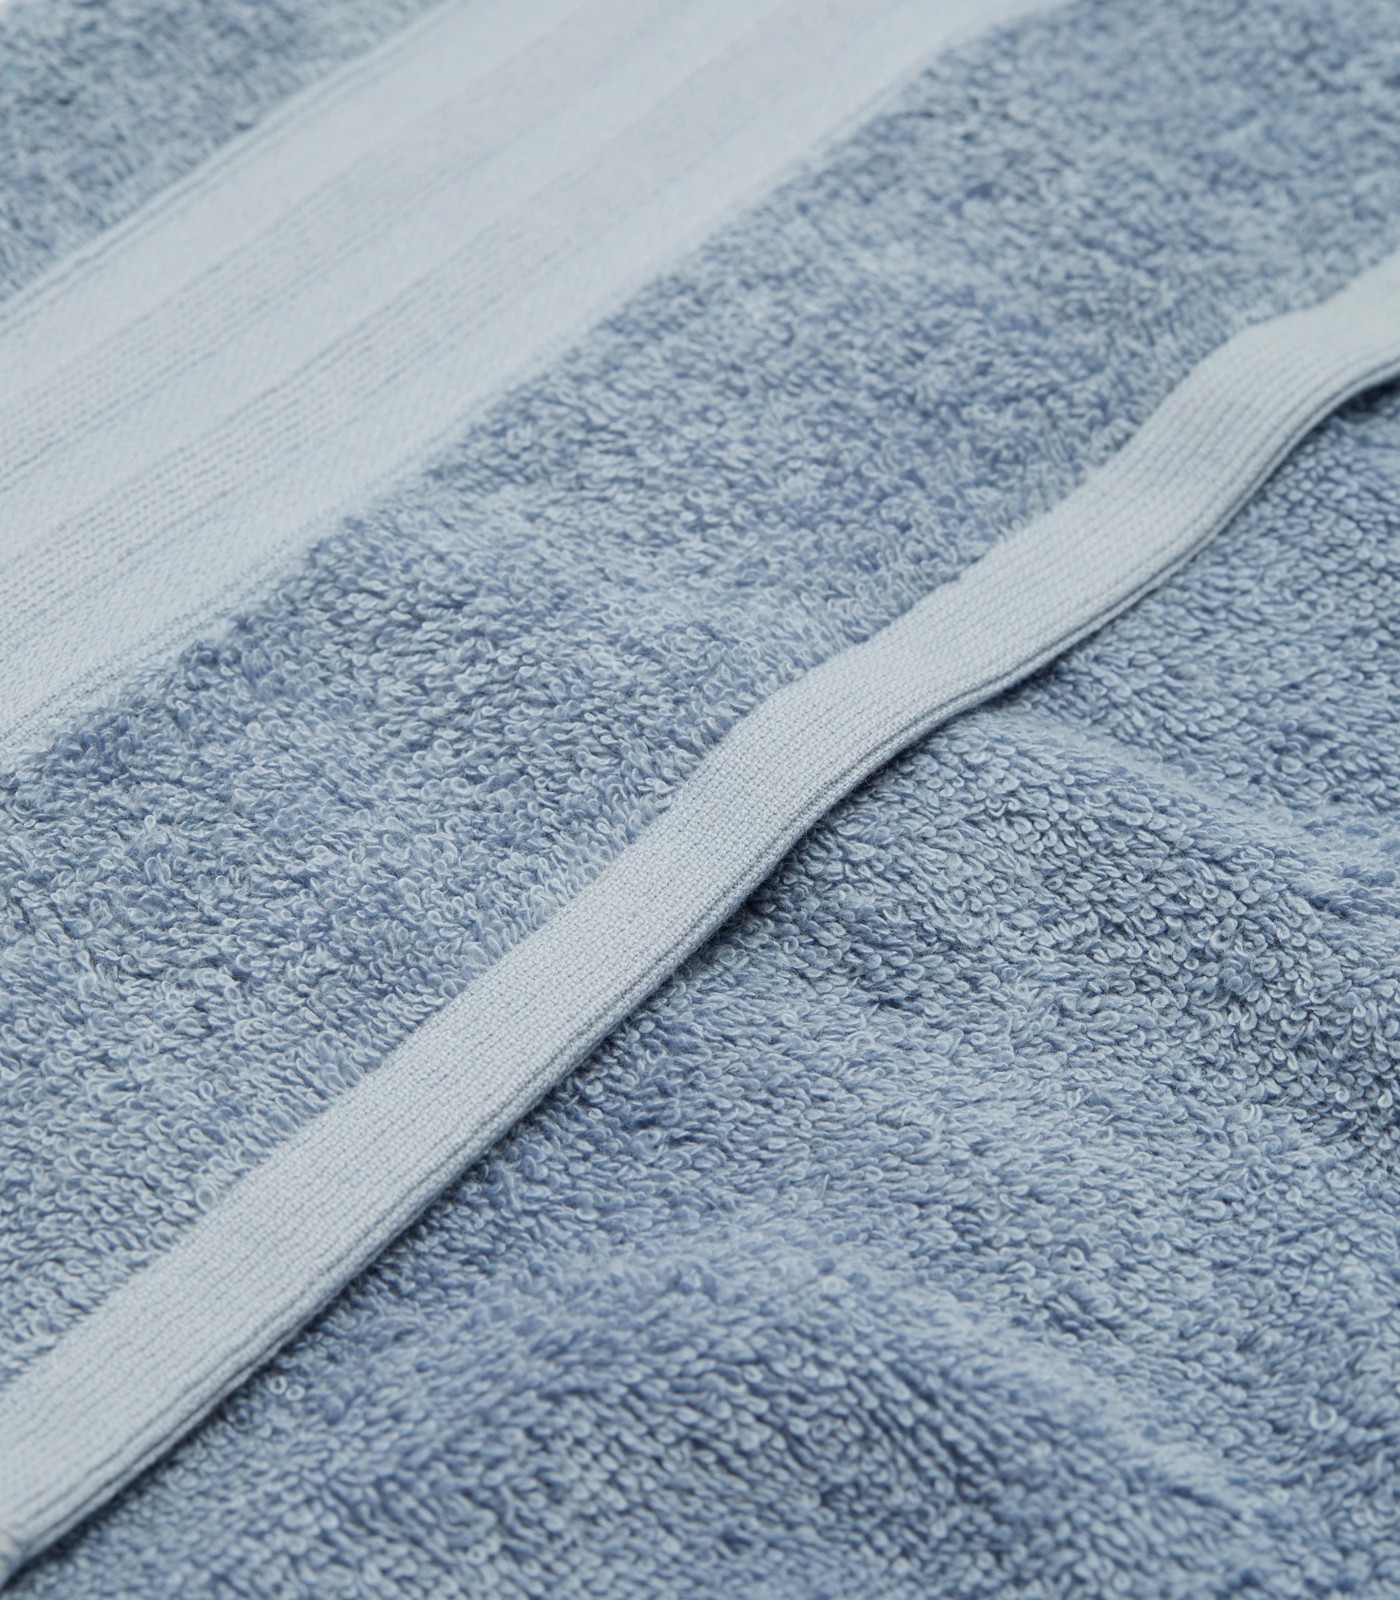 Grandeur Hand Towel - Sky Blue | Target Australia